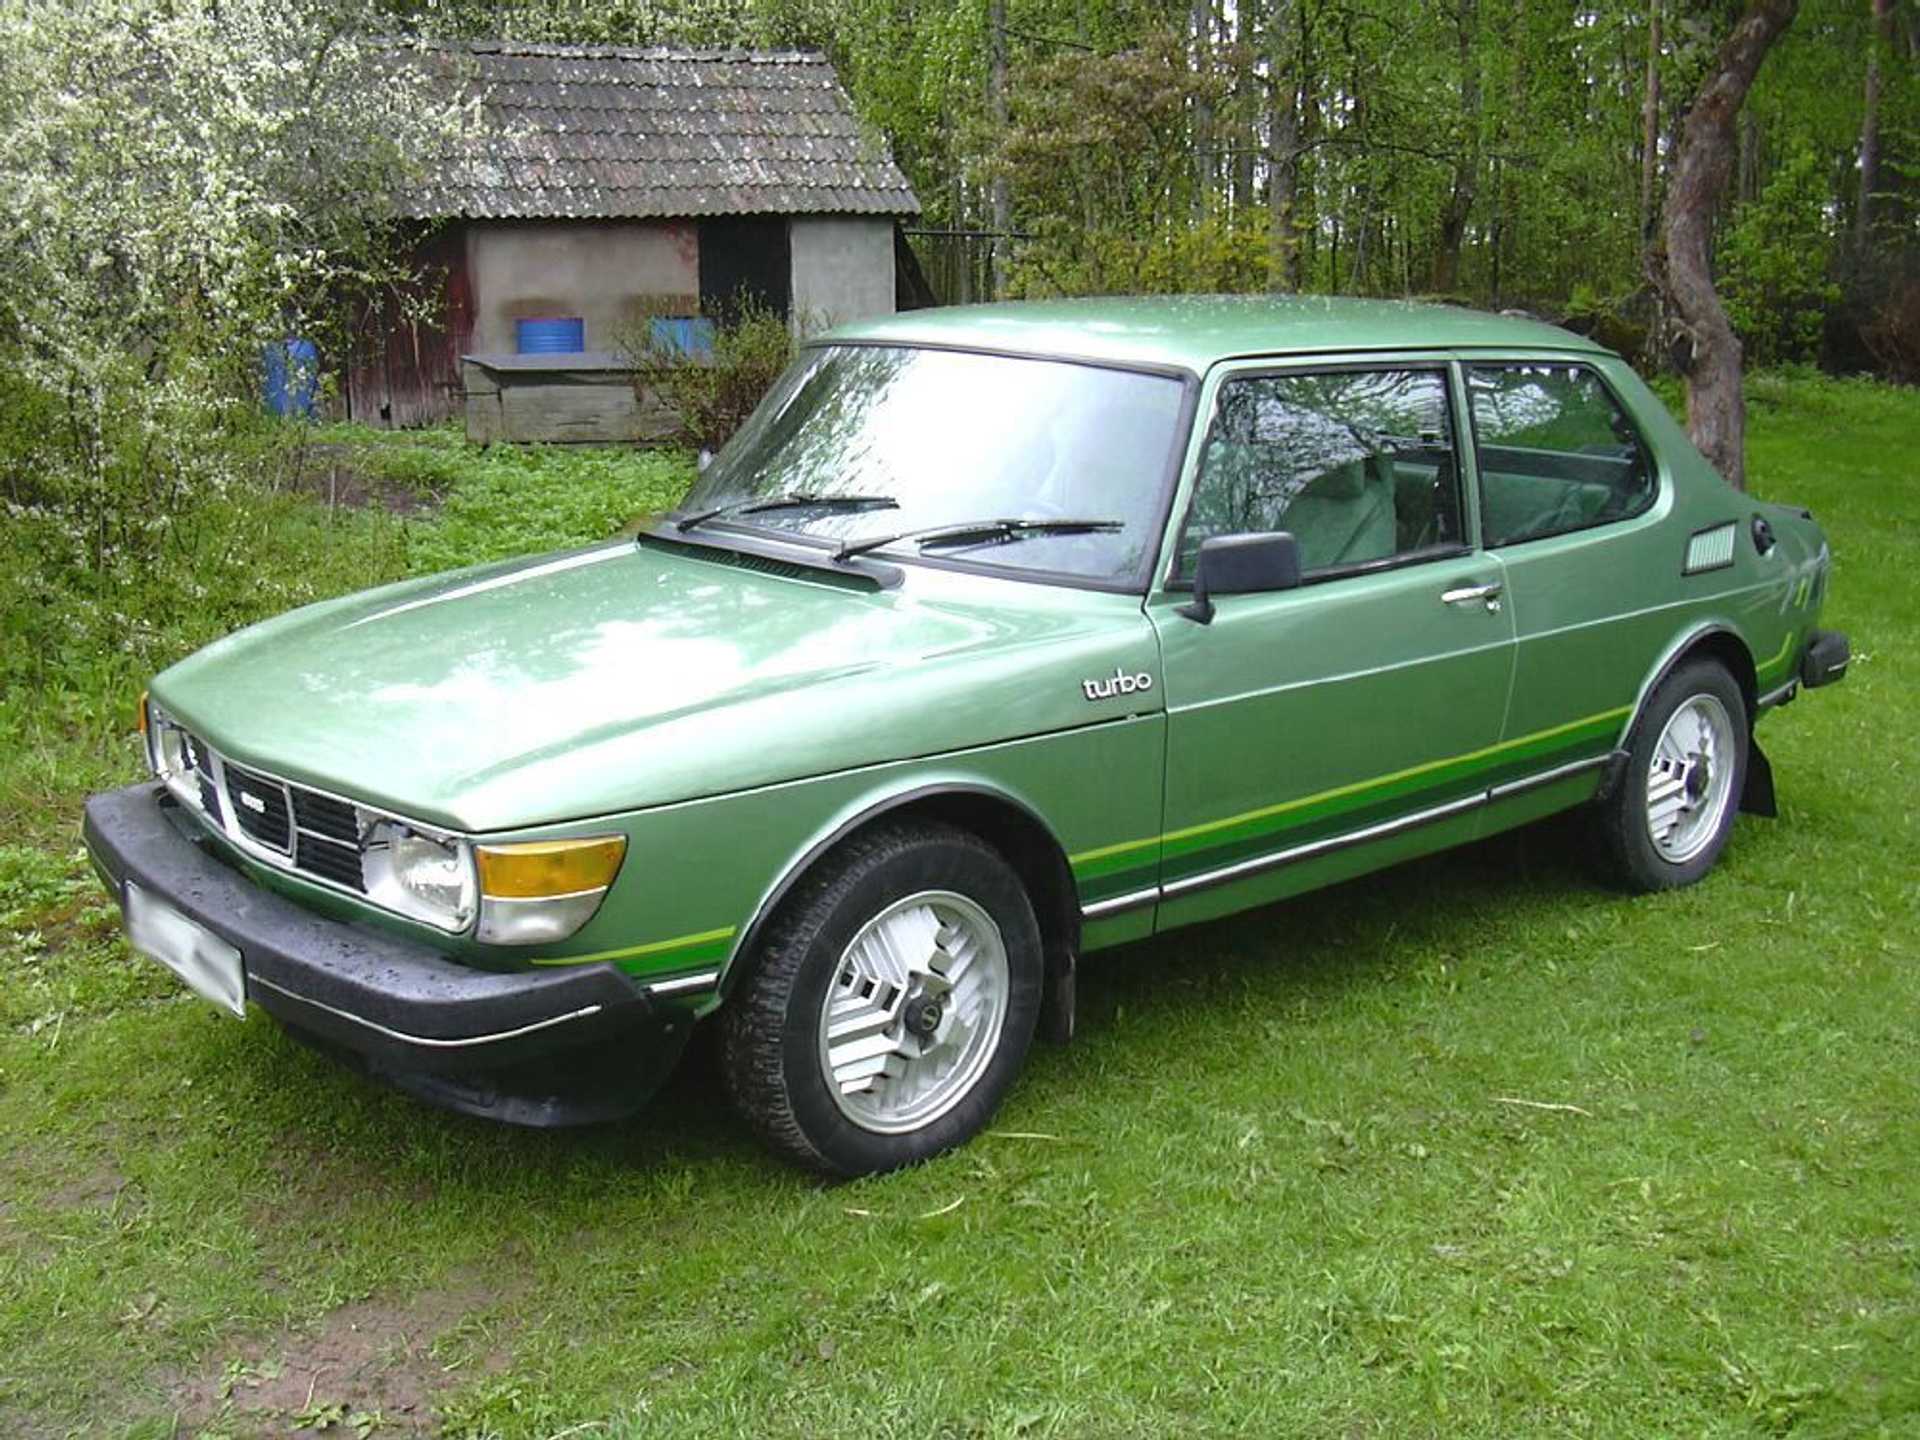 A green Saab 99 Turbo